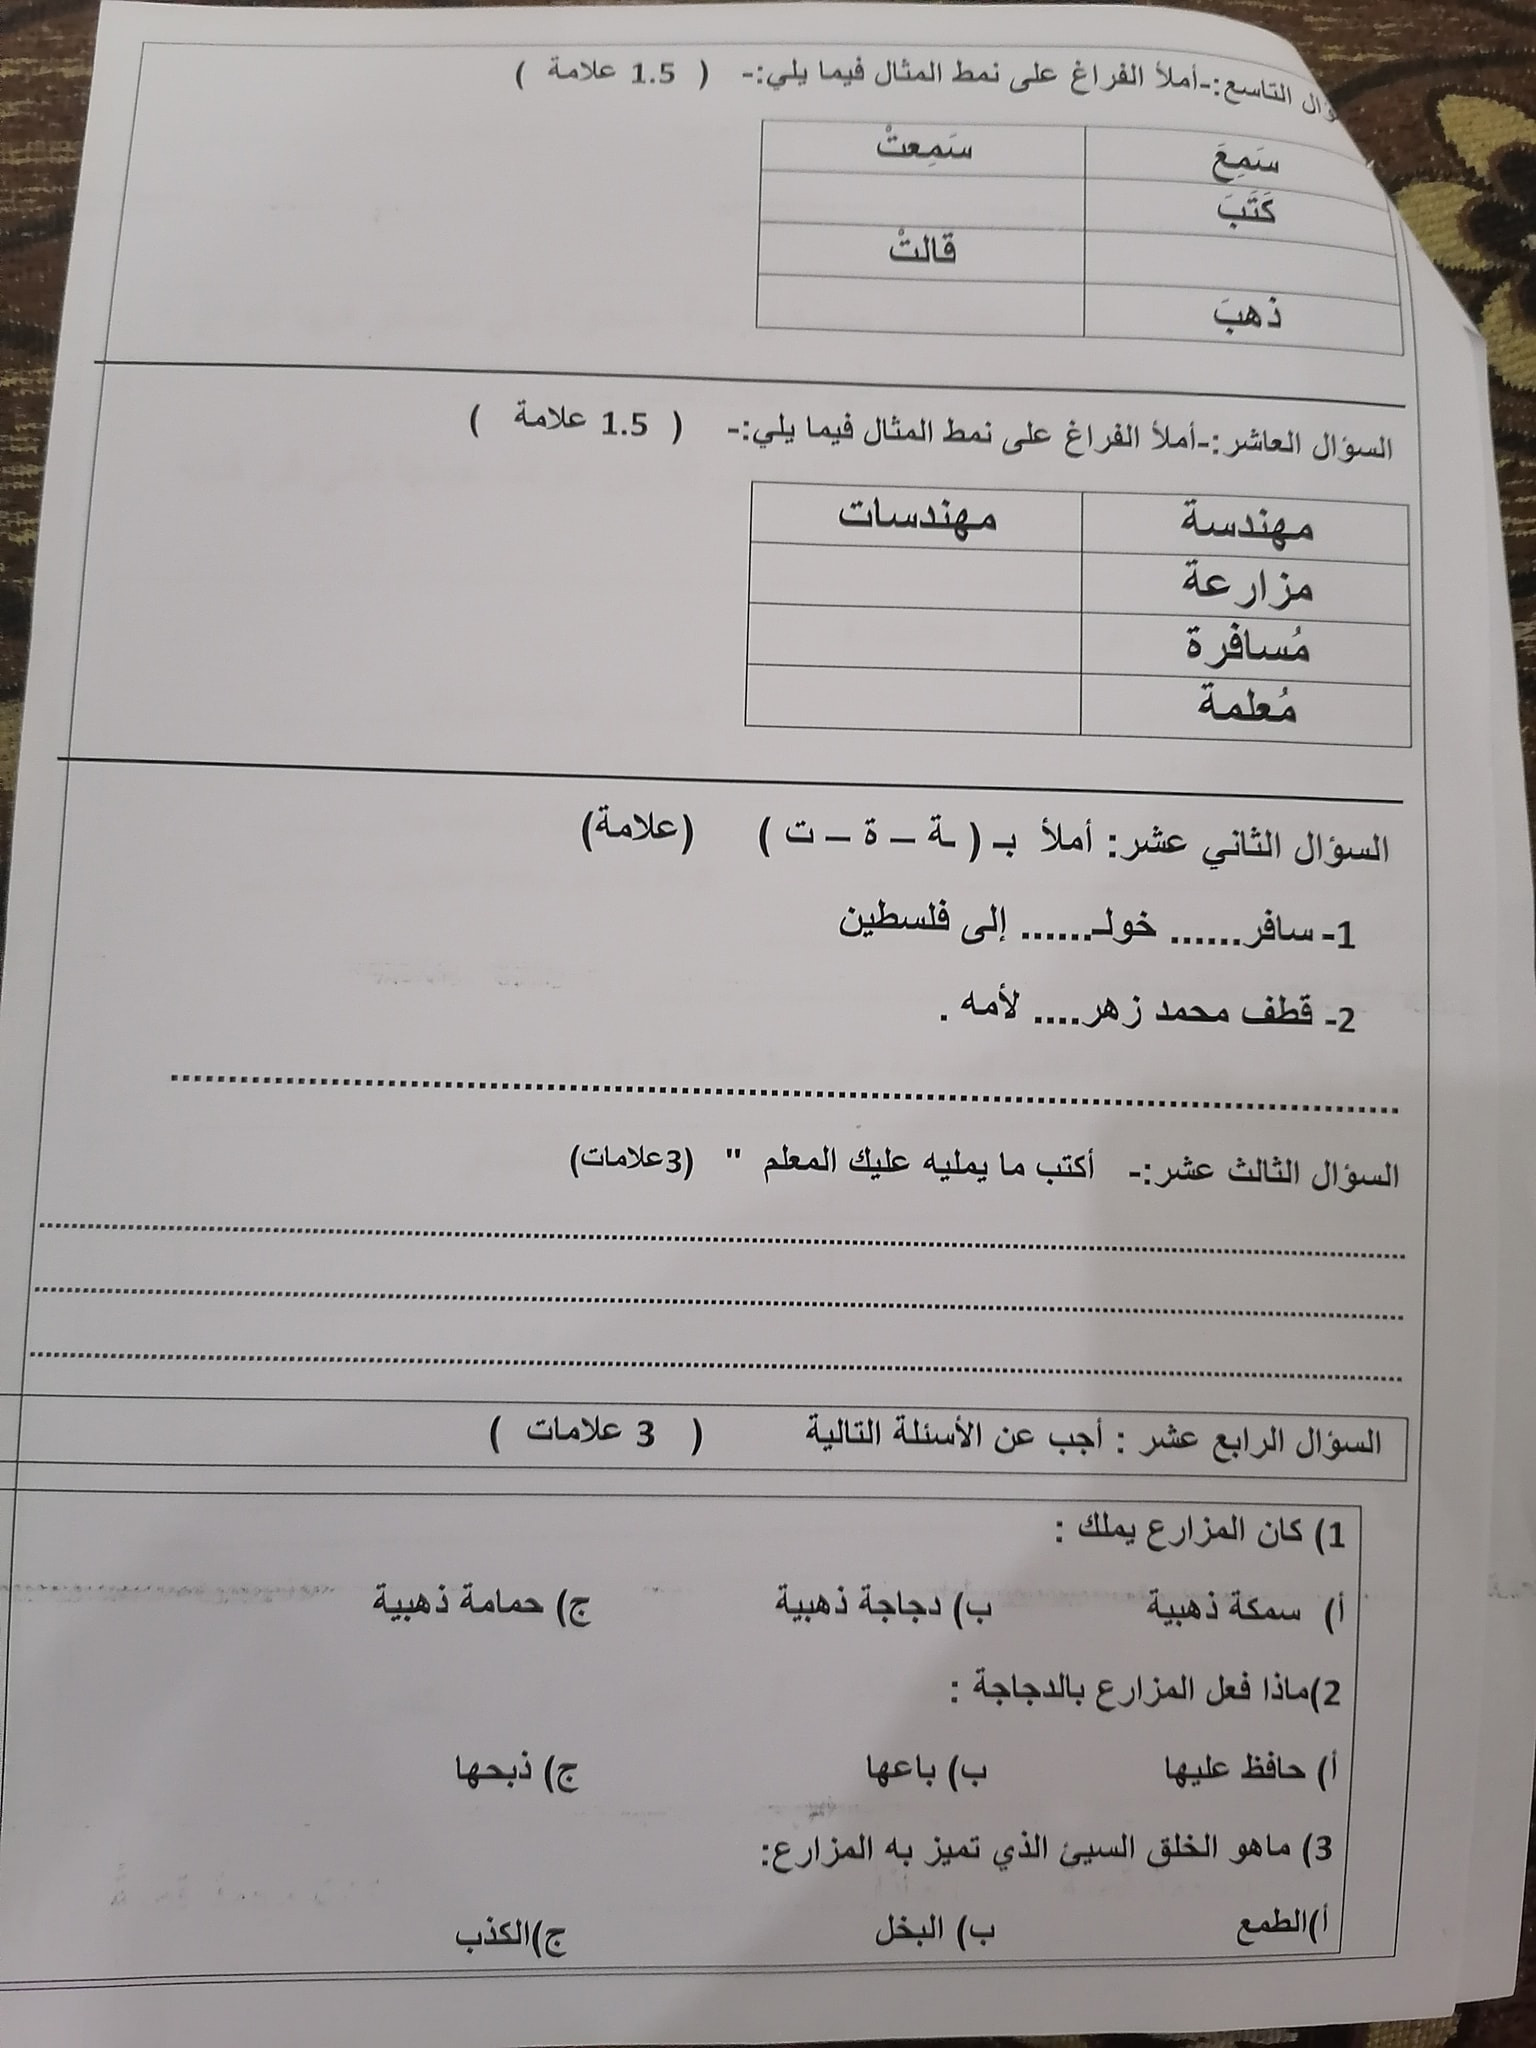 3 صور امتحان نهائي لمادة اللغة العربية للصف الثالث الفصل الاول 2021.jpg